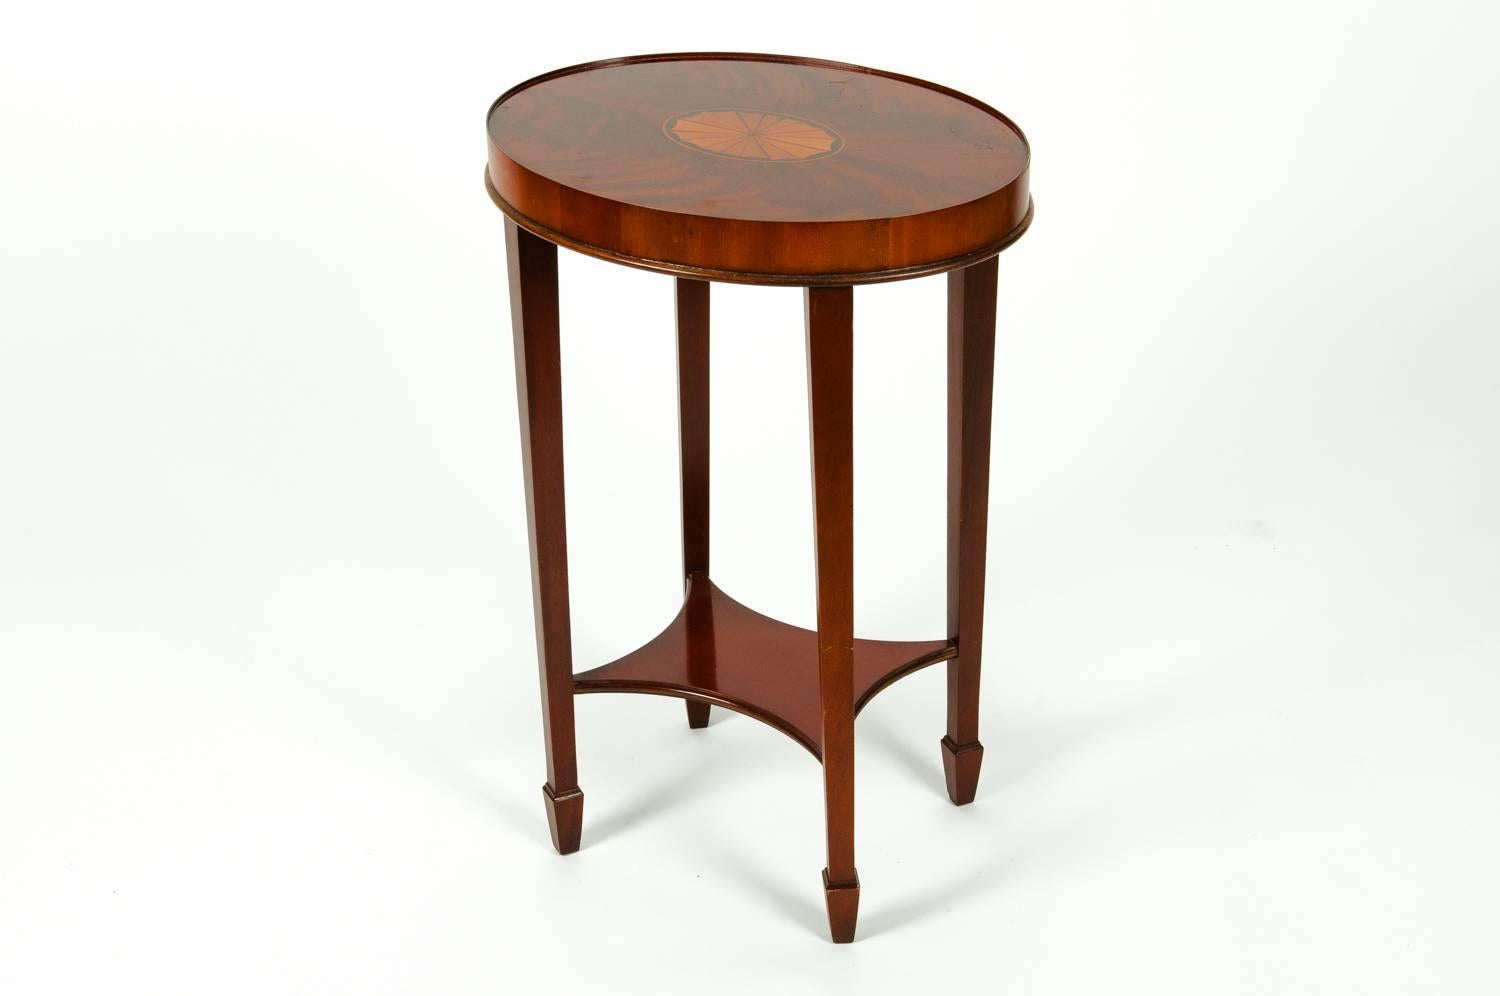 European Early 20th Century Mahogany Wood Oval Table